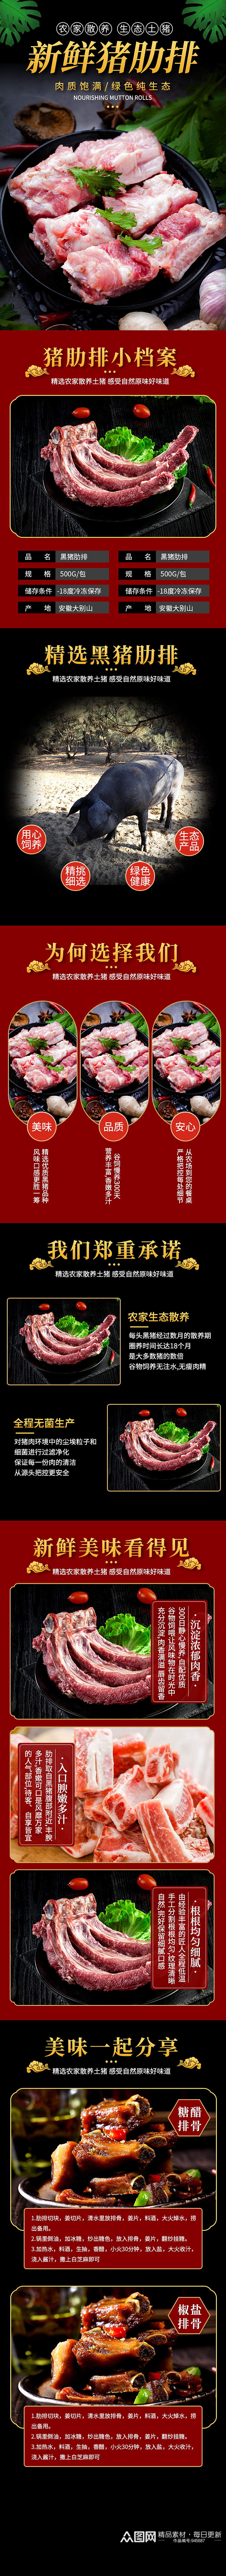 中国风生鲜肉类肋排猪排骨详情页素材